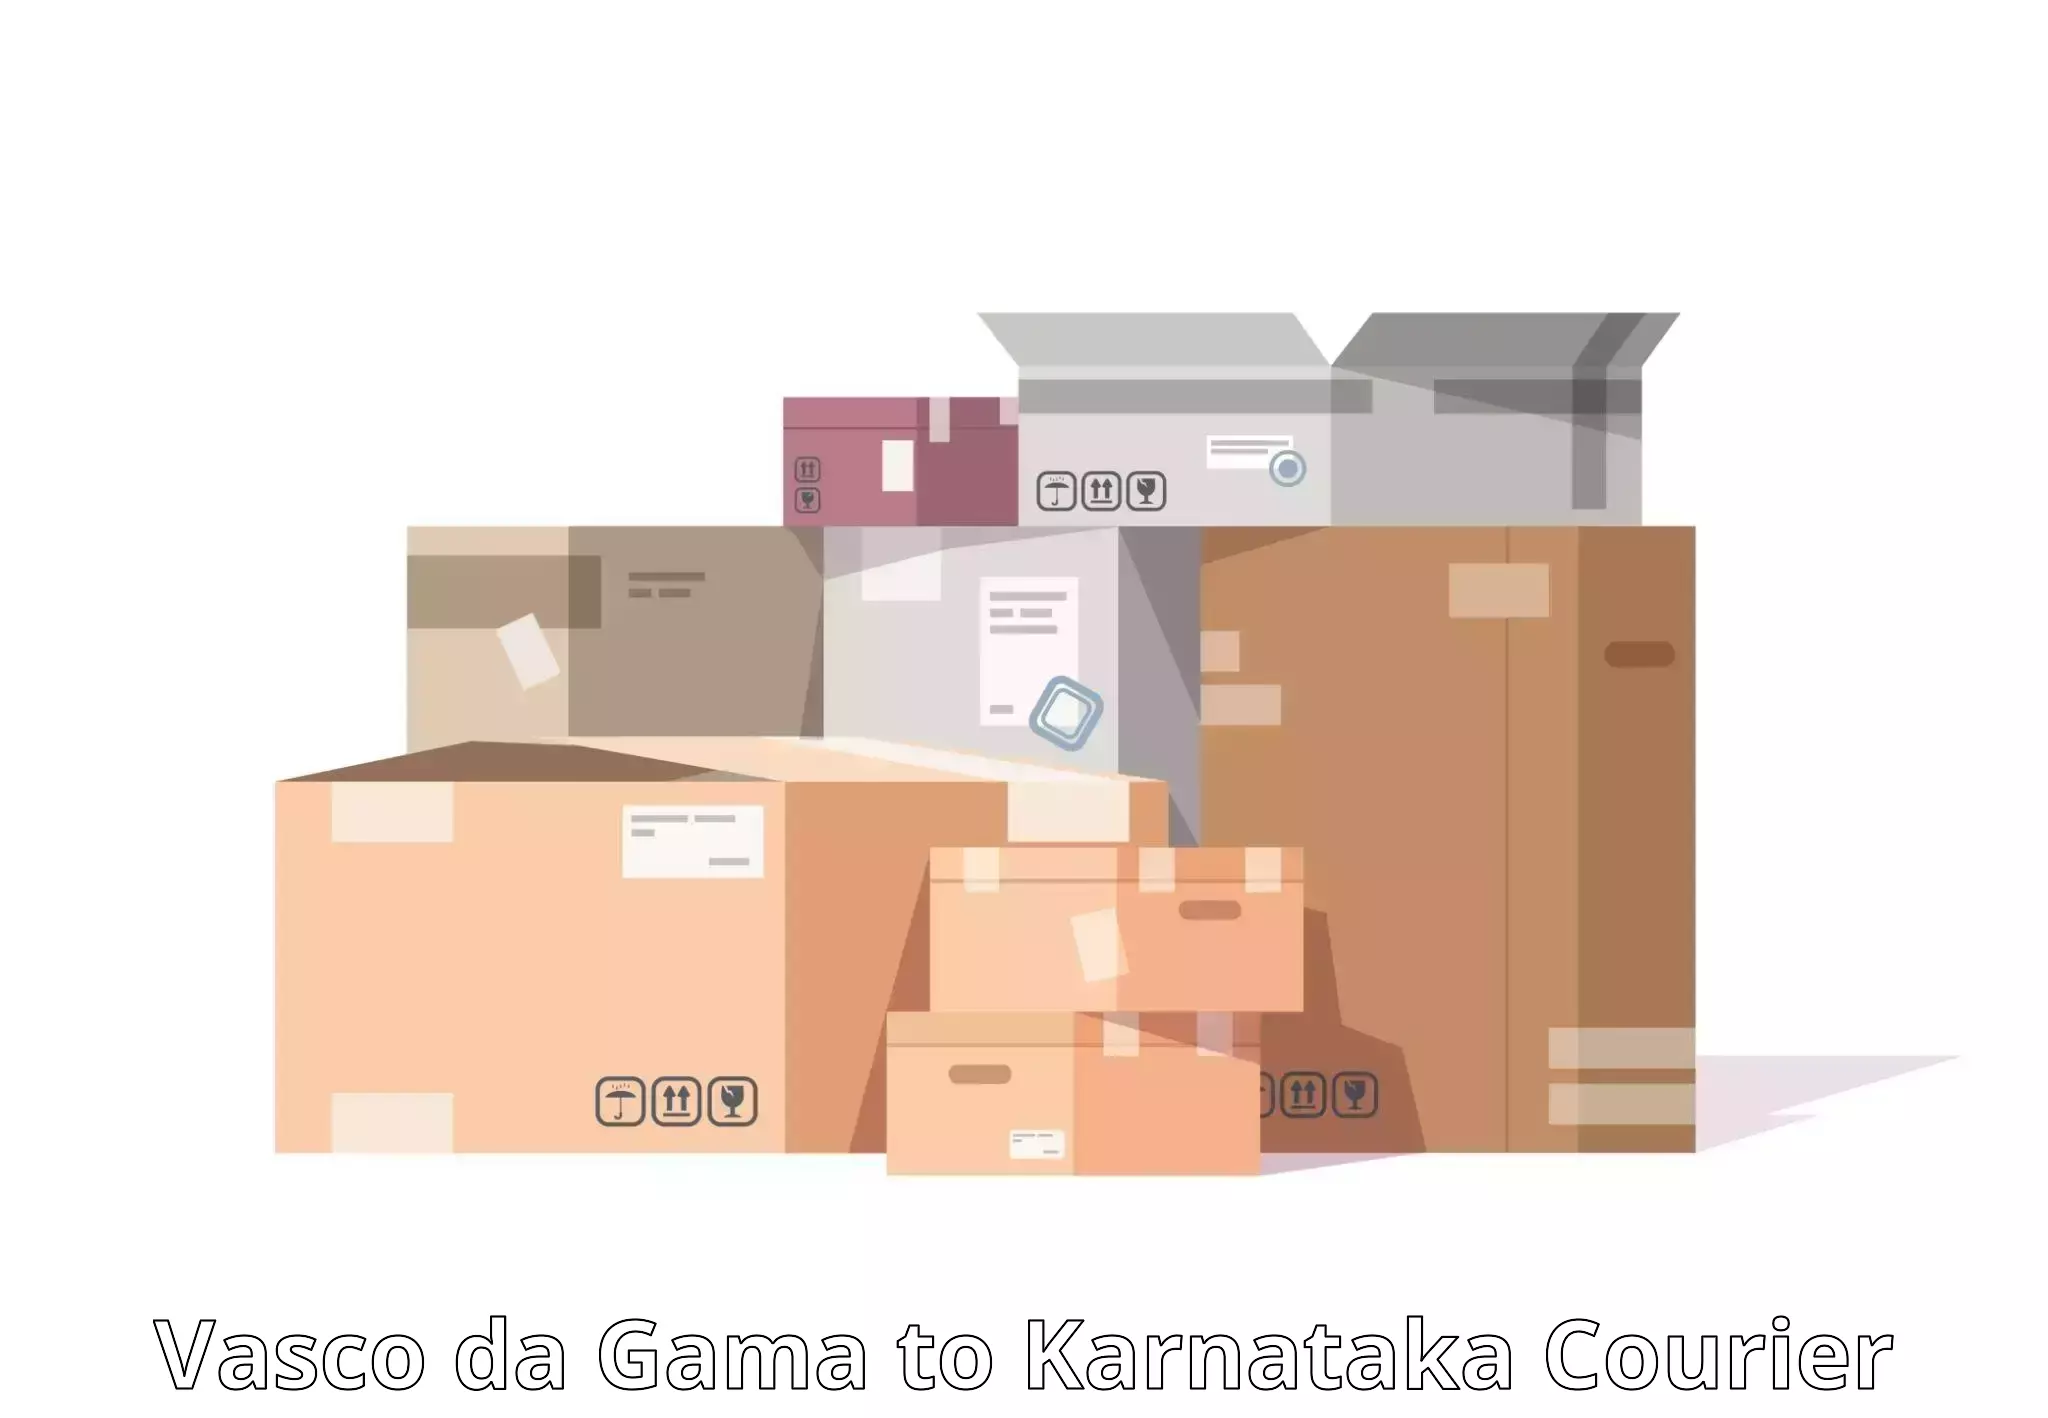 Customer-centric shipping Vasco da Gama to Karkala